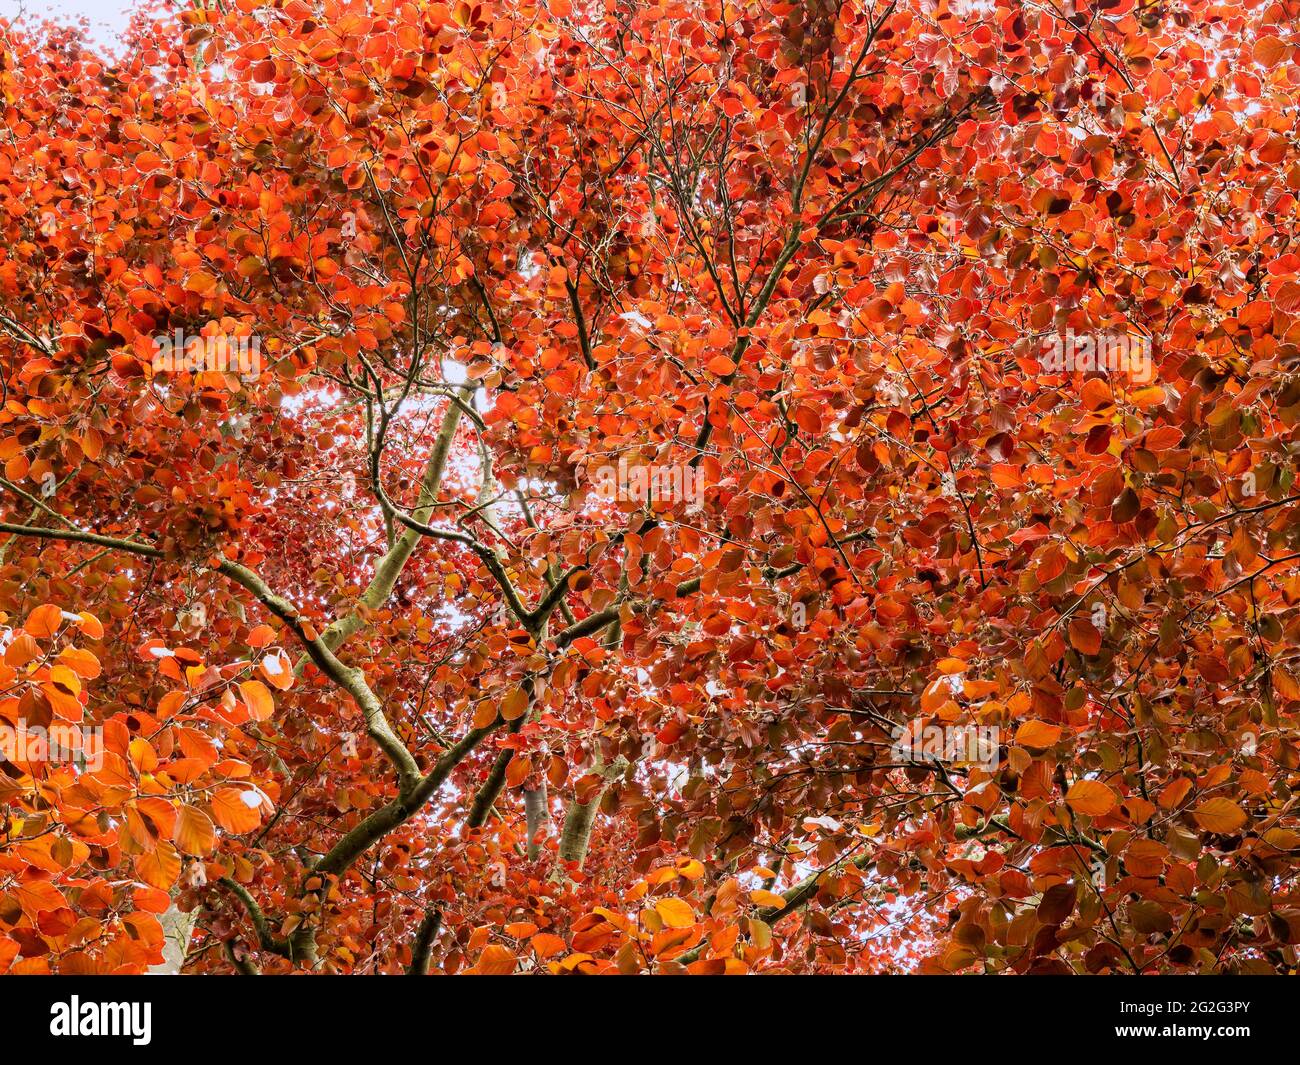 Orange leaves on a copper beech tree seen from below Stock Photo